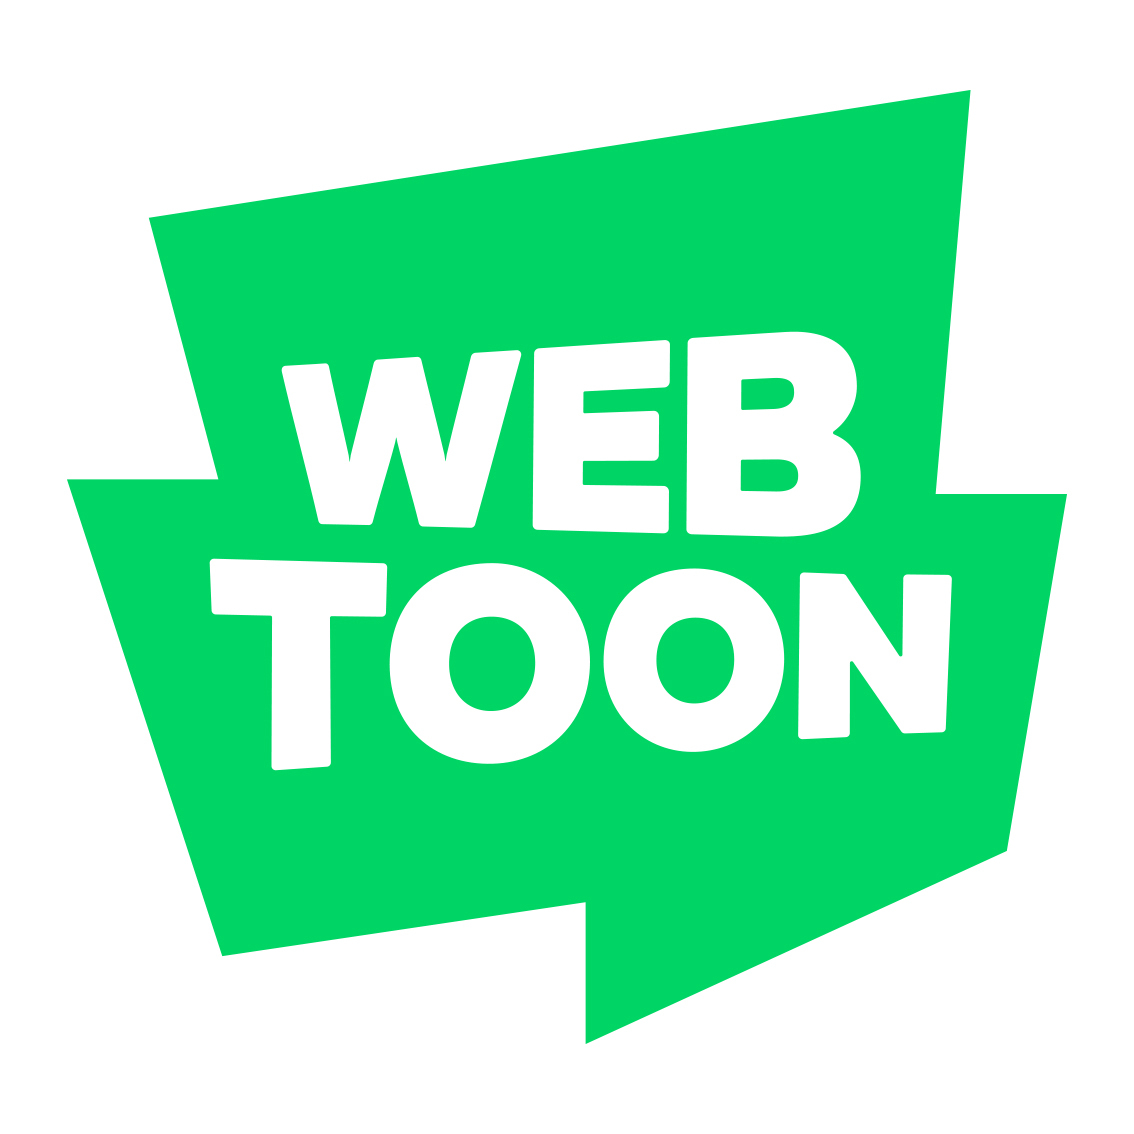 Naver Webtoon logo (Naver Webtoon)